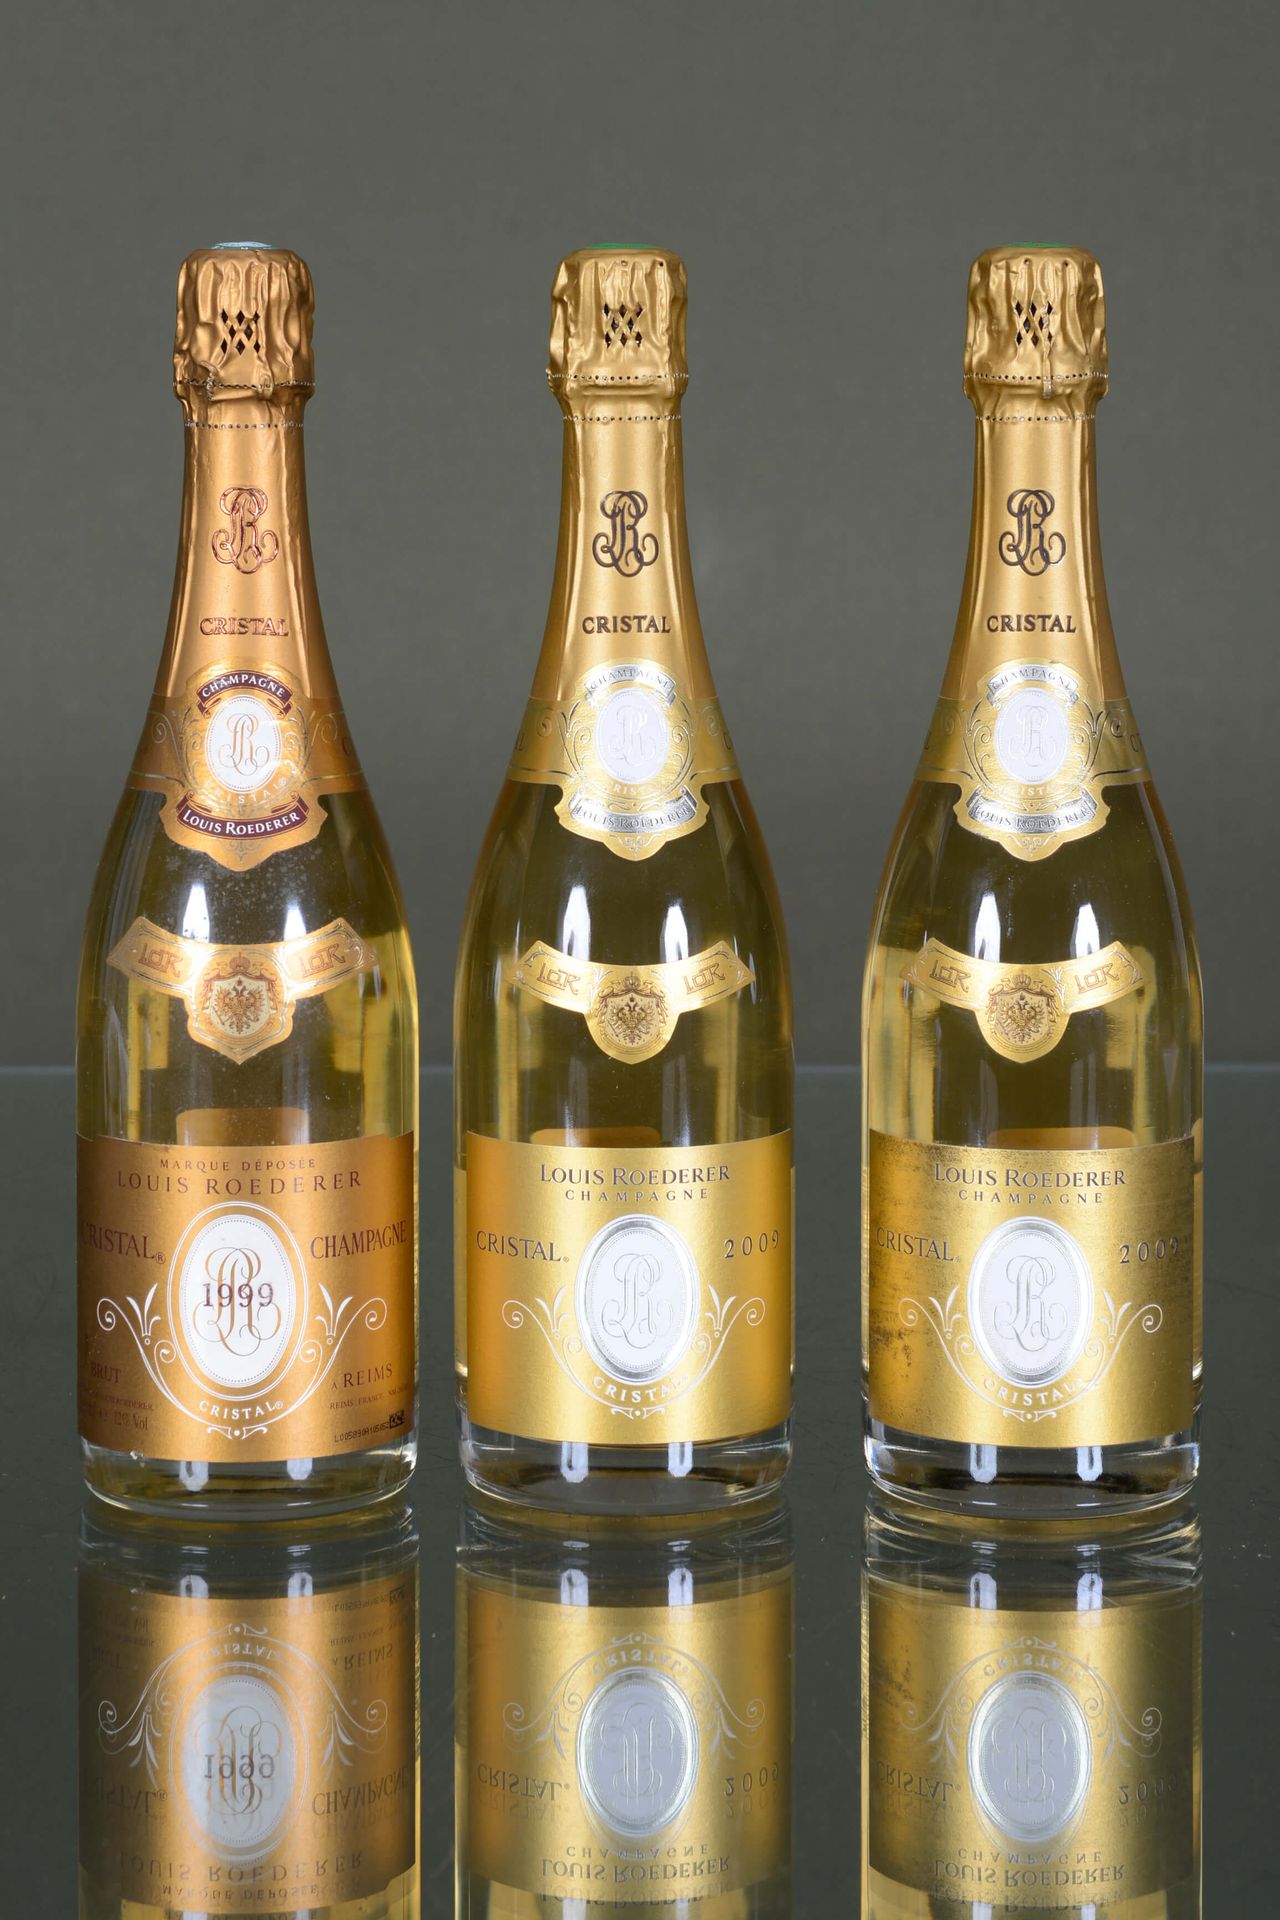 Champagne Cristal Roederer 1瓶，1999年+2瓶，2009年

状况报告：小污点，摩擦